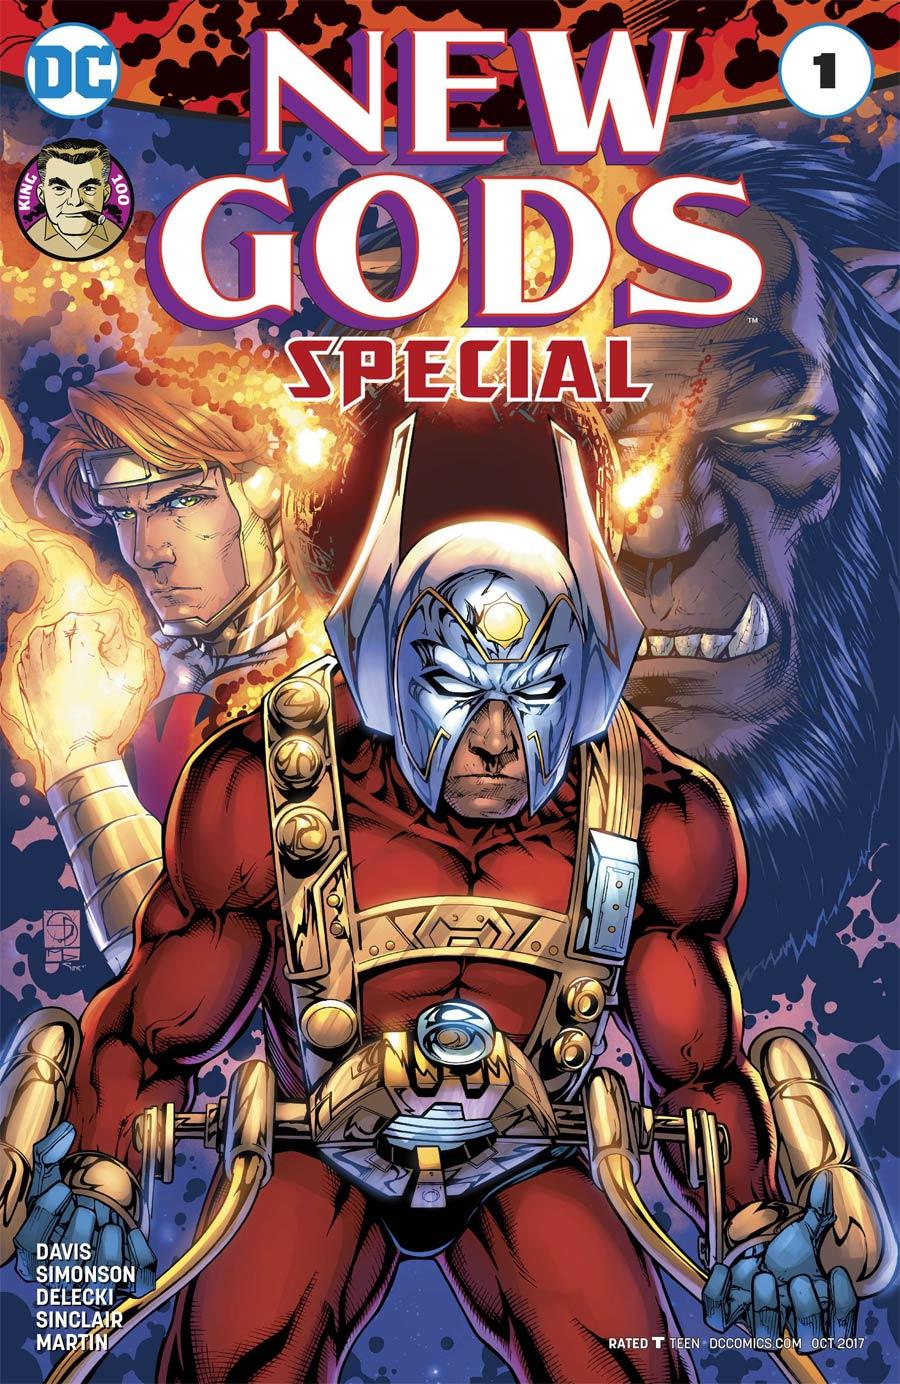 New Gods Special Vol. 1 #1